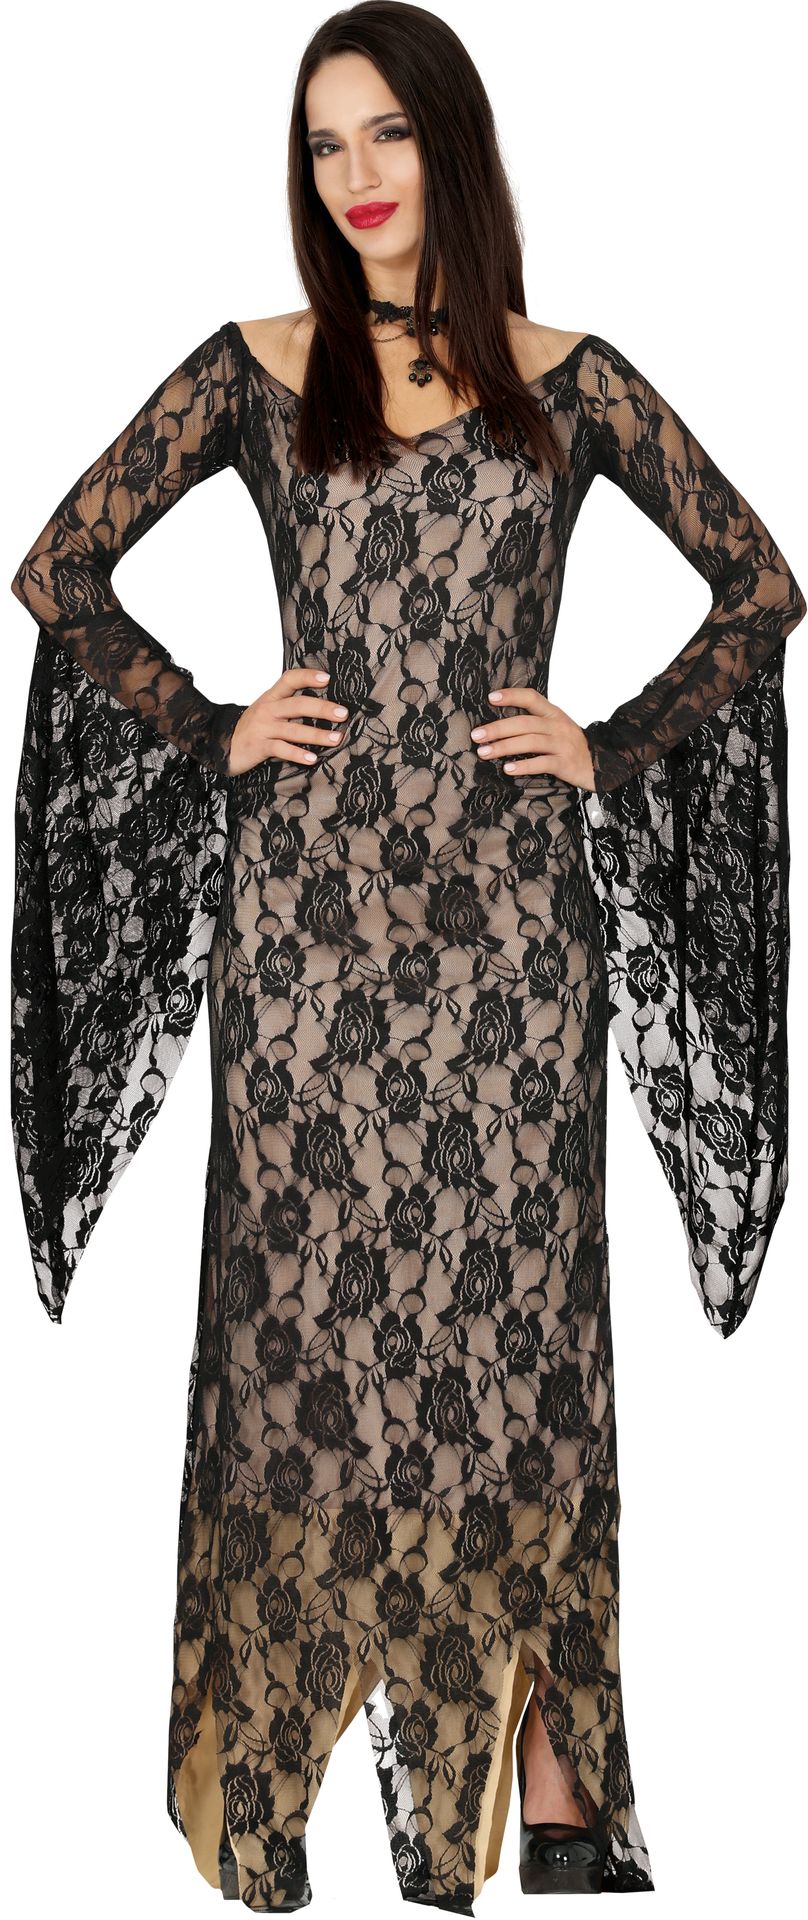 Gothic zwarte weduwe jurk